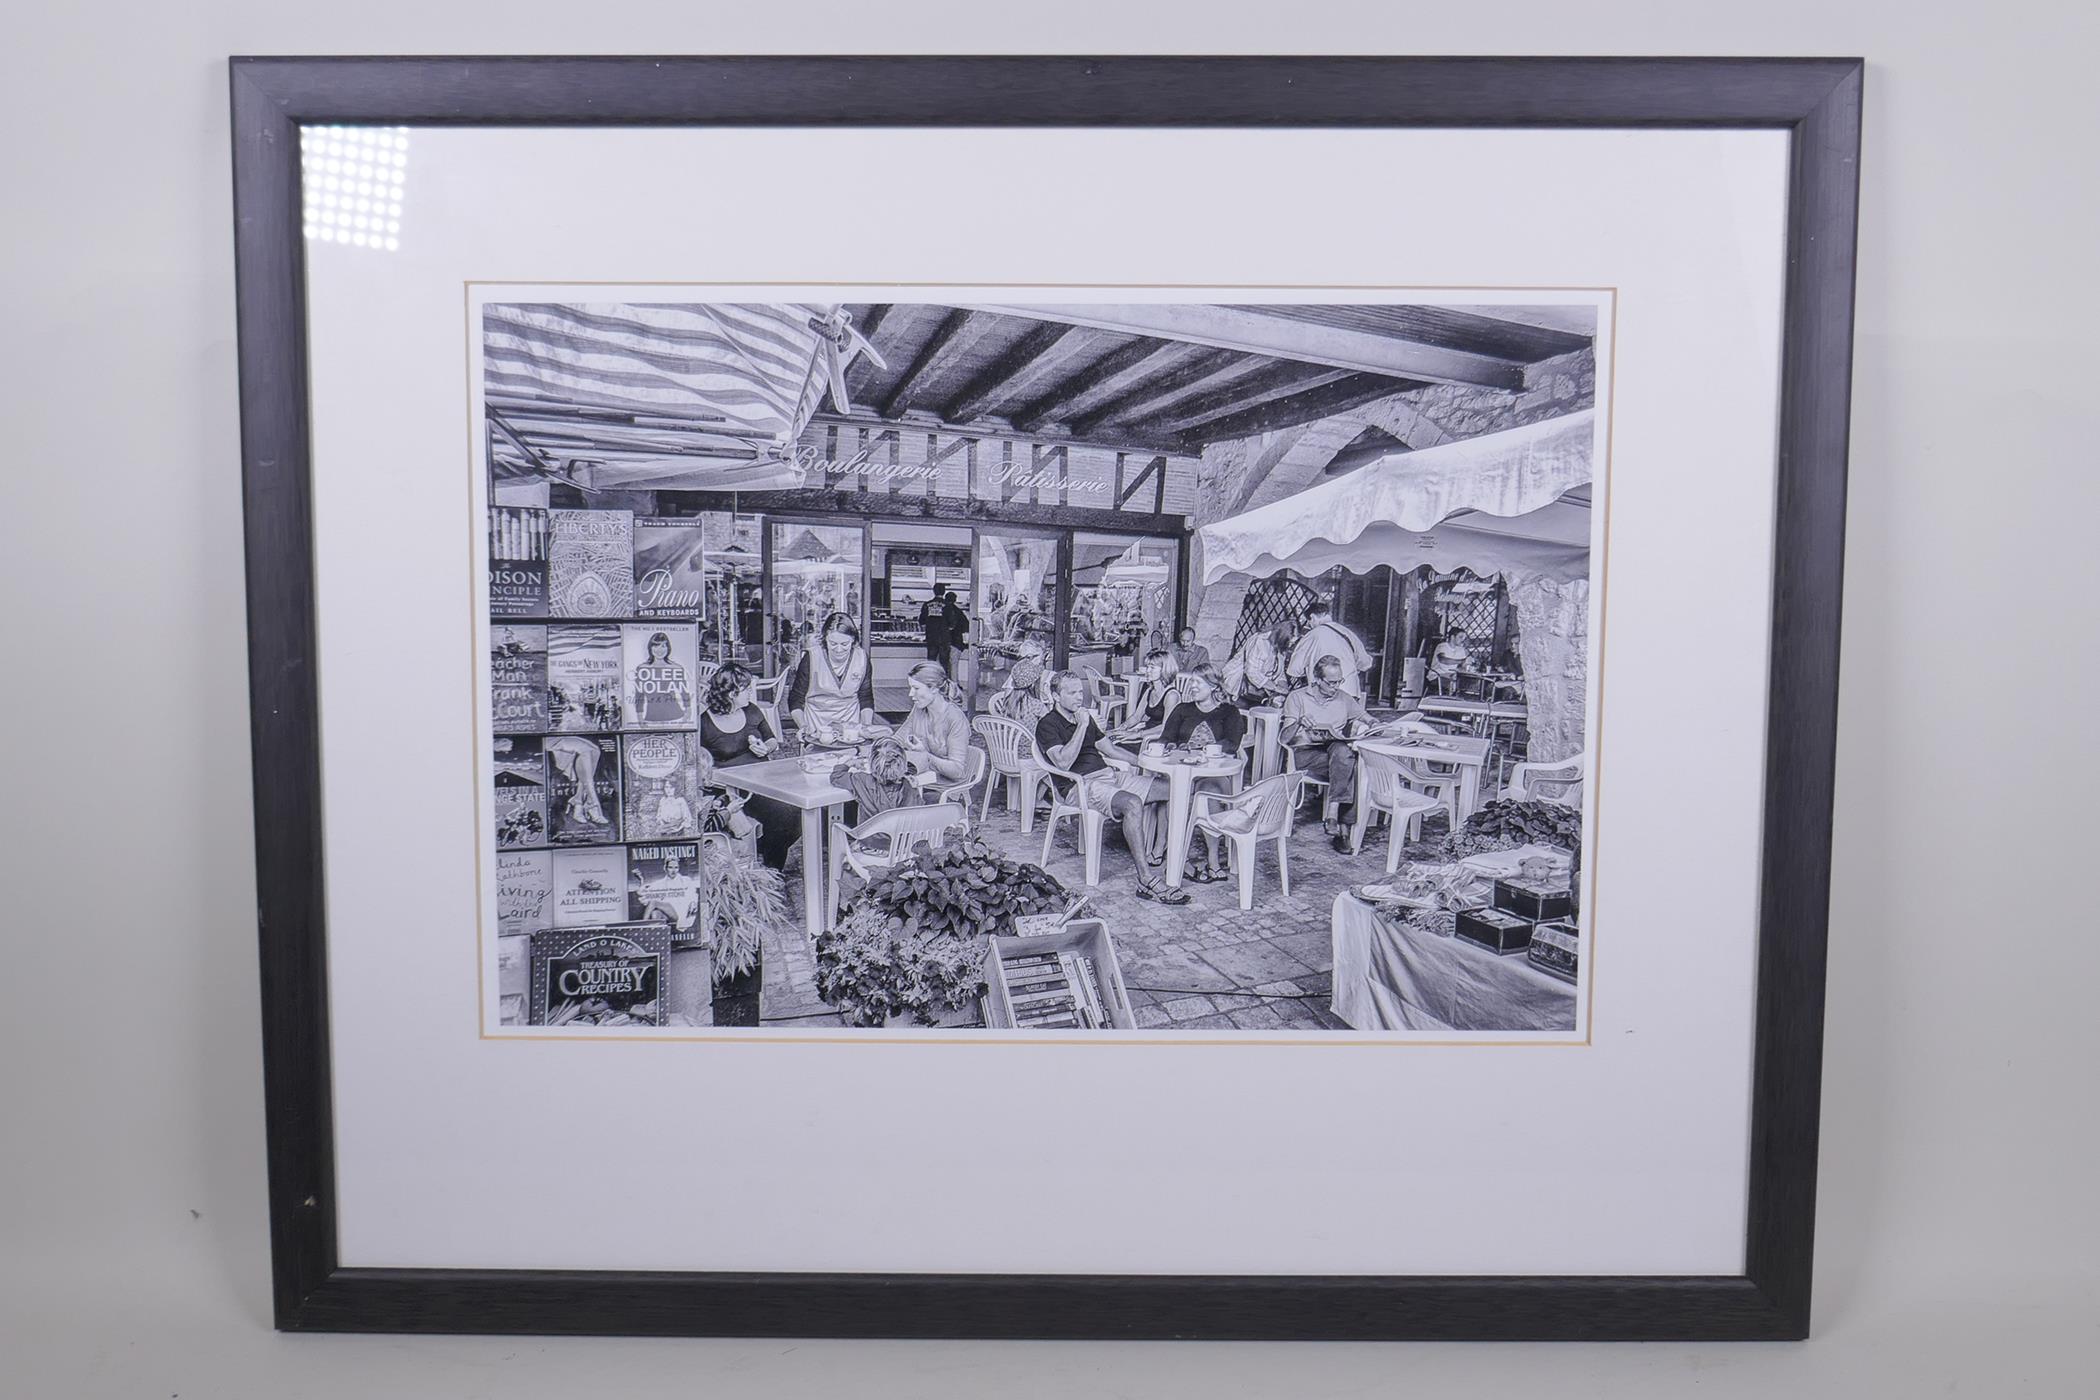 David G. Kemish, Cafe Culture, monochrome photograph, exhibition label verso, 37 x 24cm - Image 3 of 5